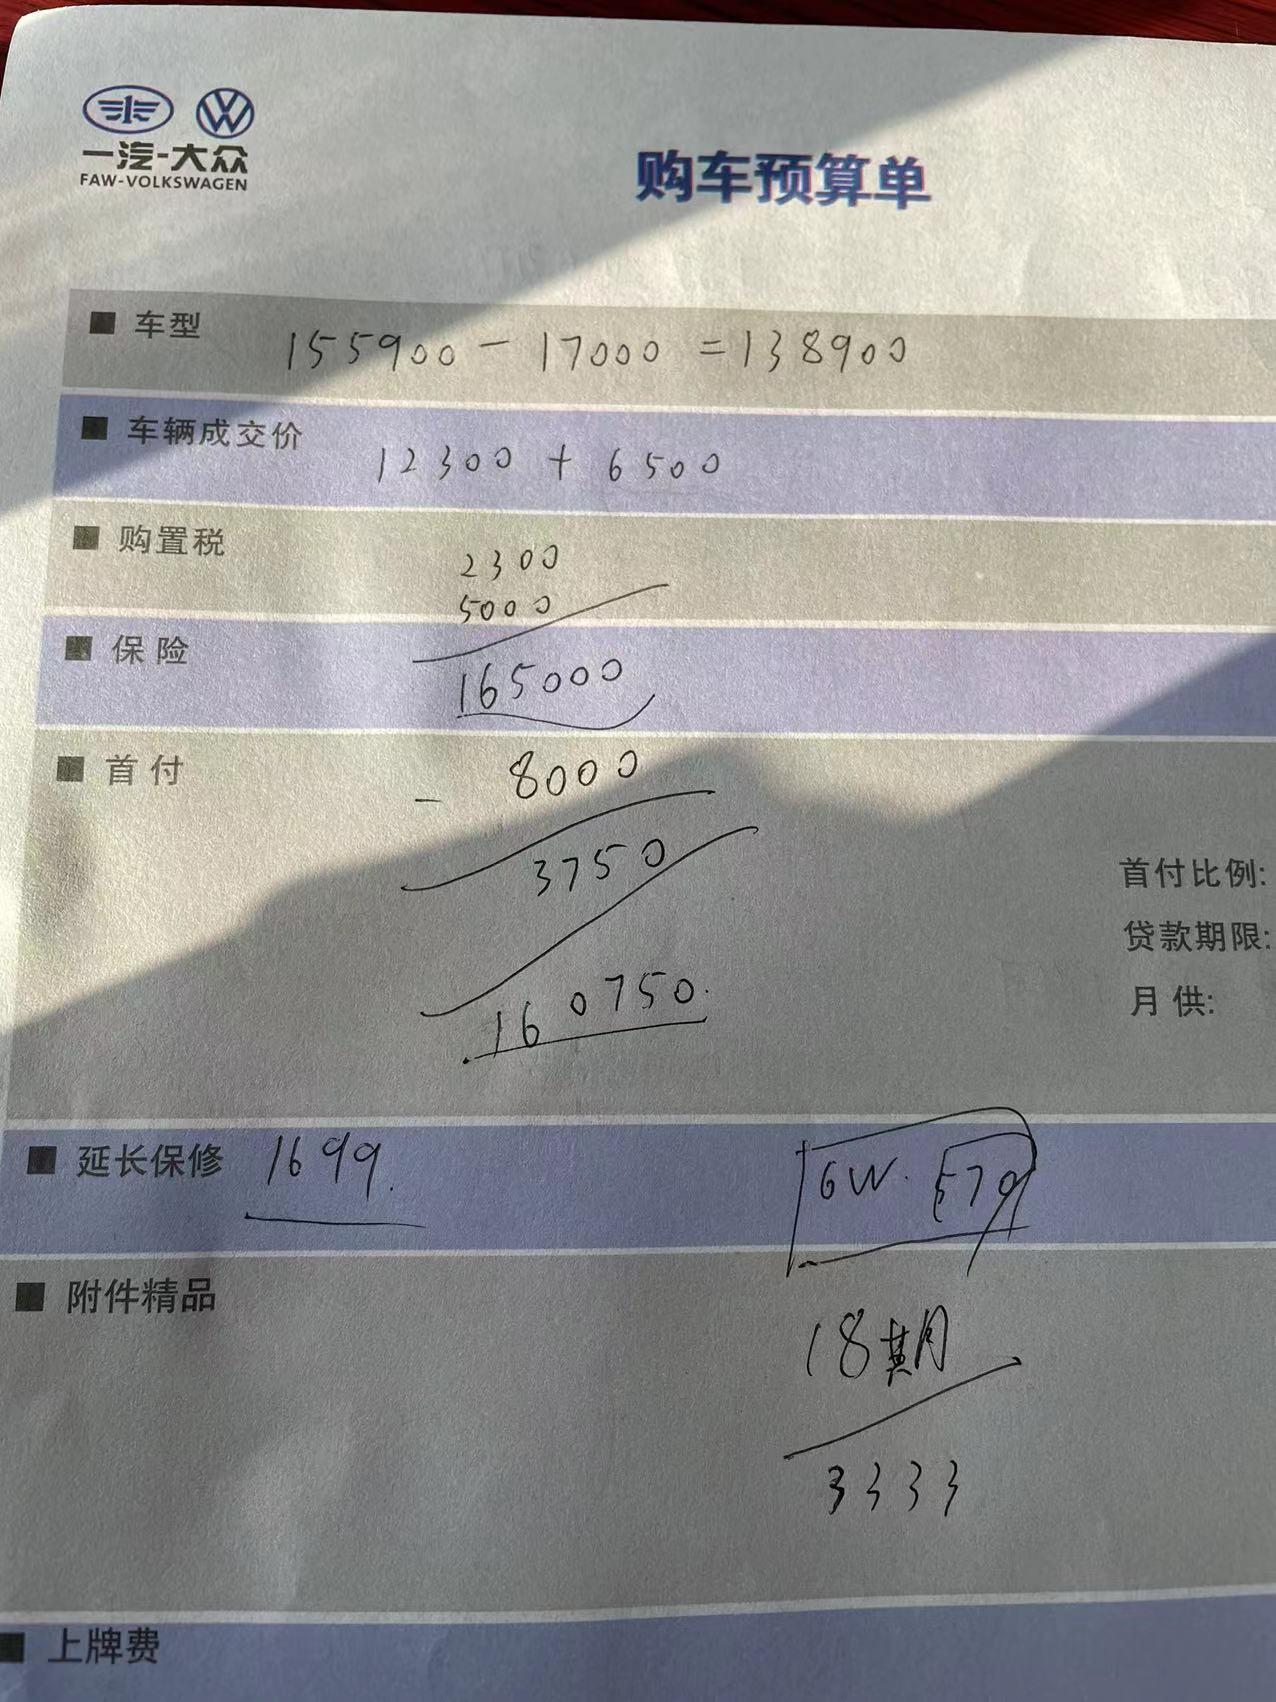 大众速腾 北京4S店刚打电话280超越分期15.7 只限这个周末 2不算利息，带膜，脚垫，行车记录仪，镀晶，之前是16万